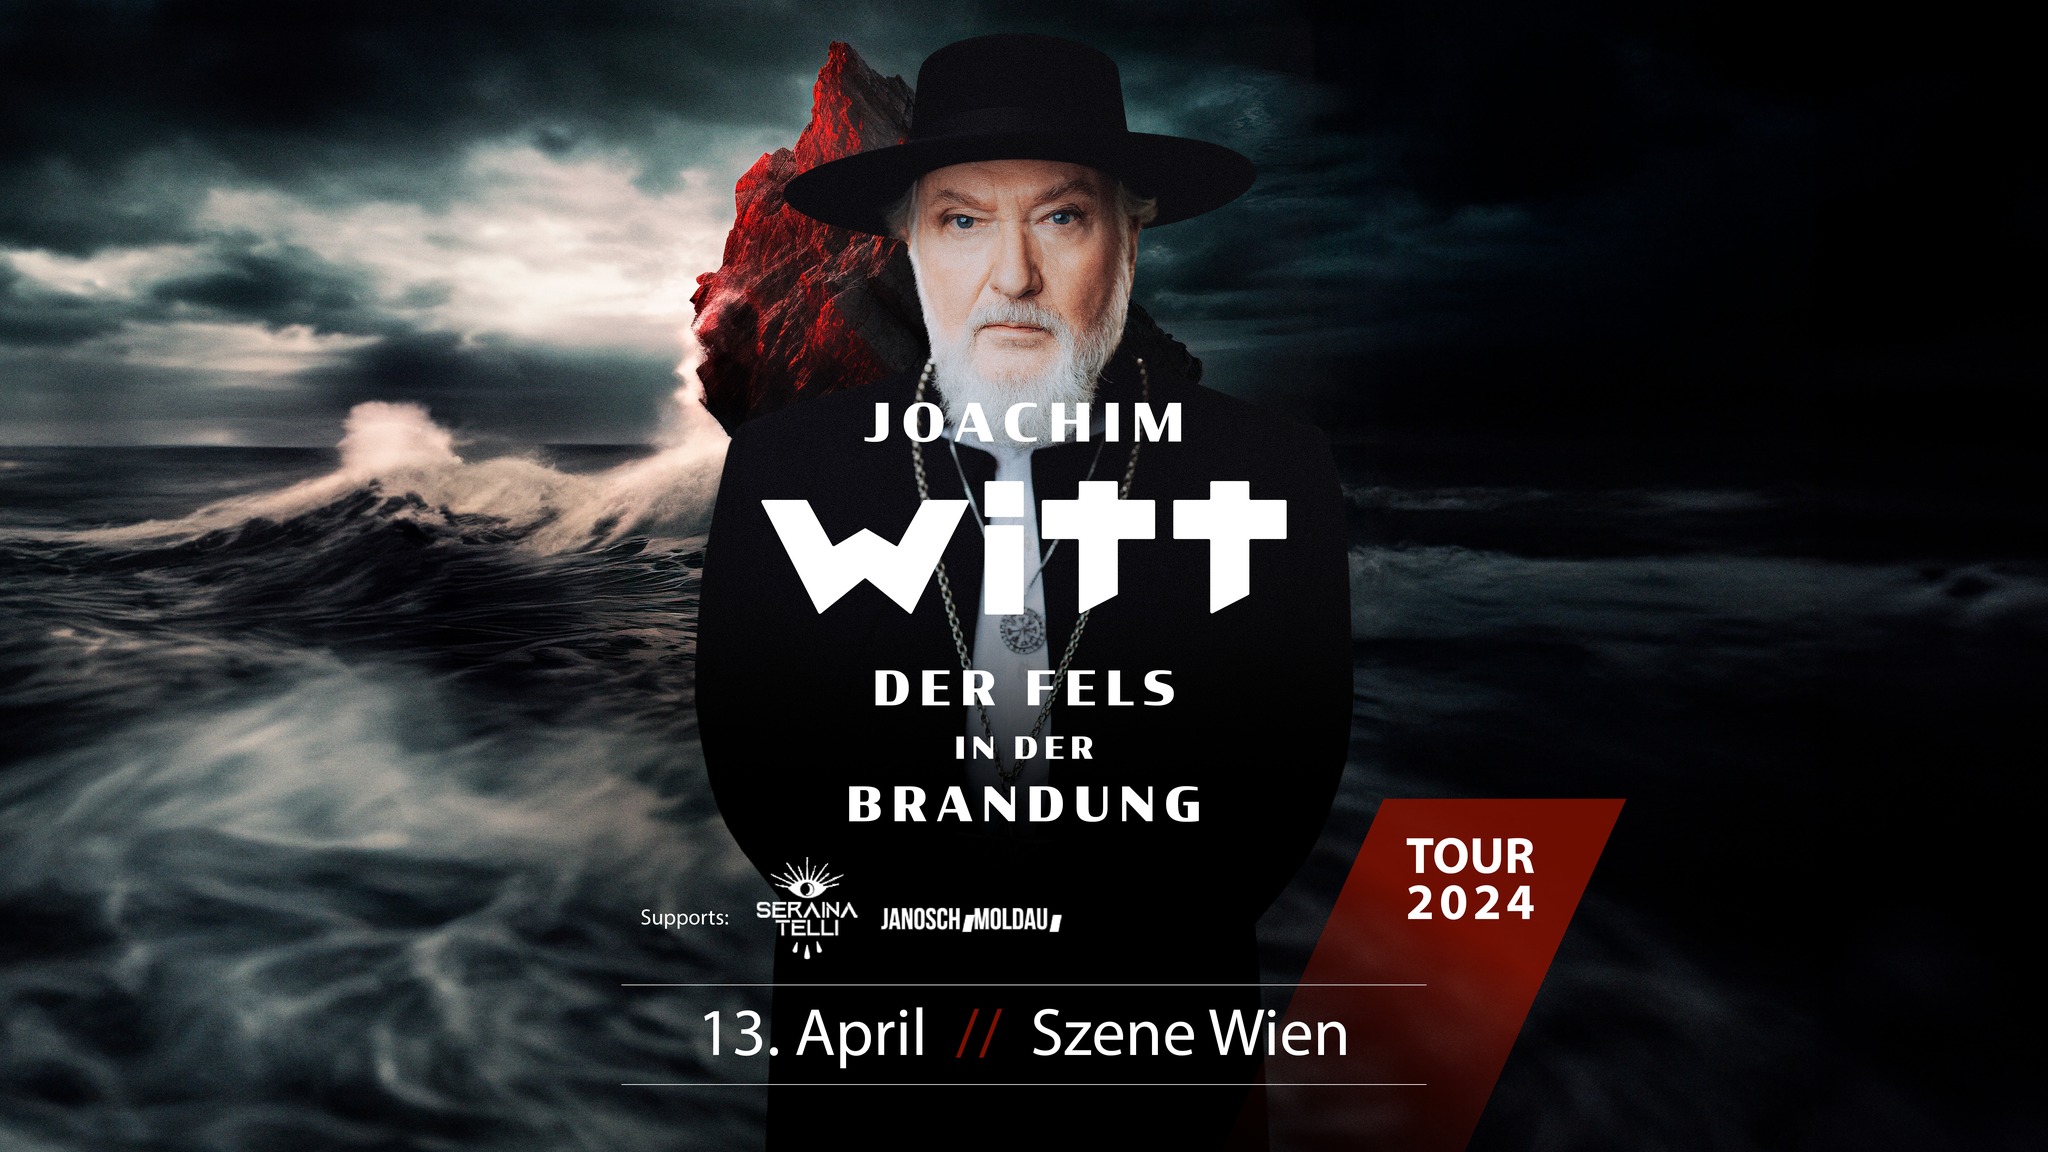 Joachim Witt am 13. April 2024 @ Szene Wien.